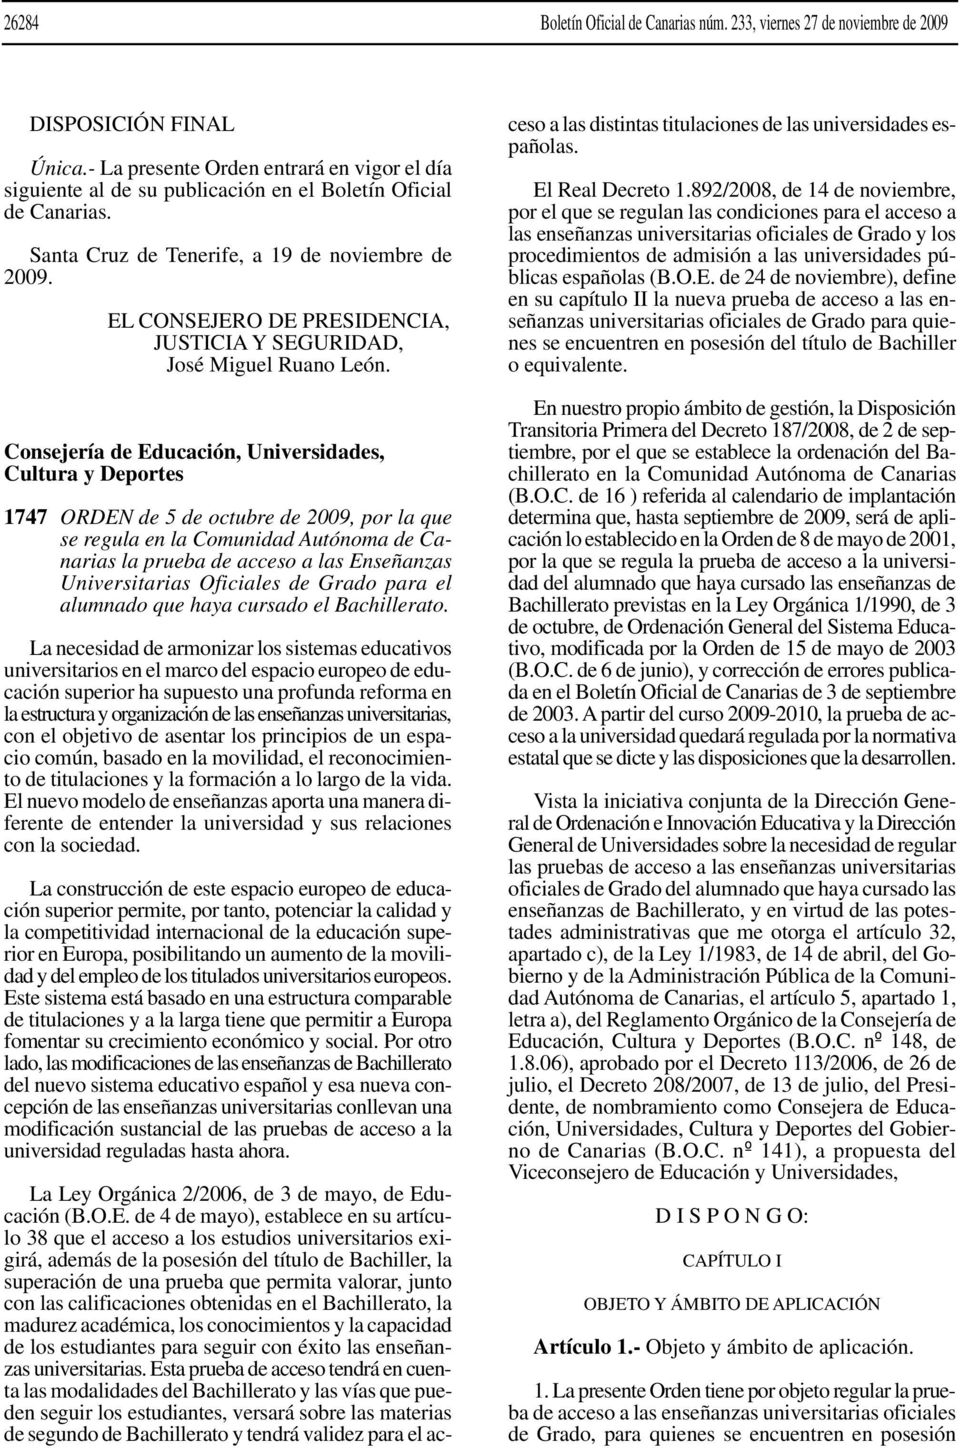 EL CONSEJERO DE PRESIDENCIA, JUSTICIA Y SEGURIDAD, José Miguel Ruano León.